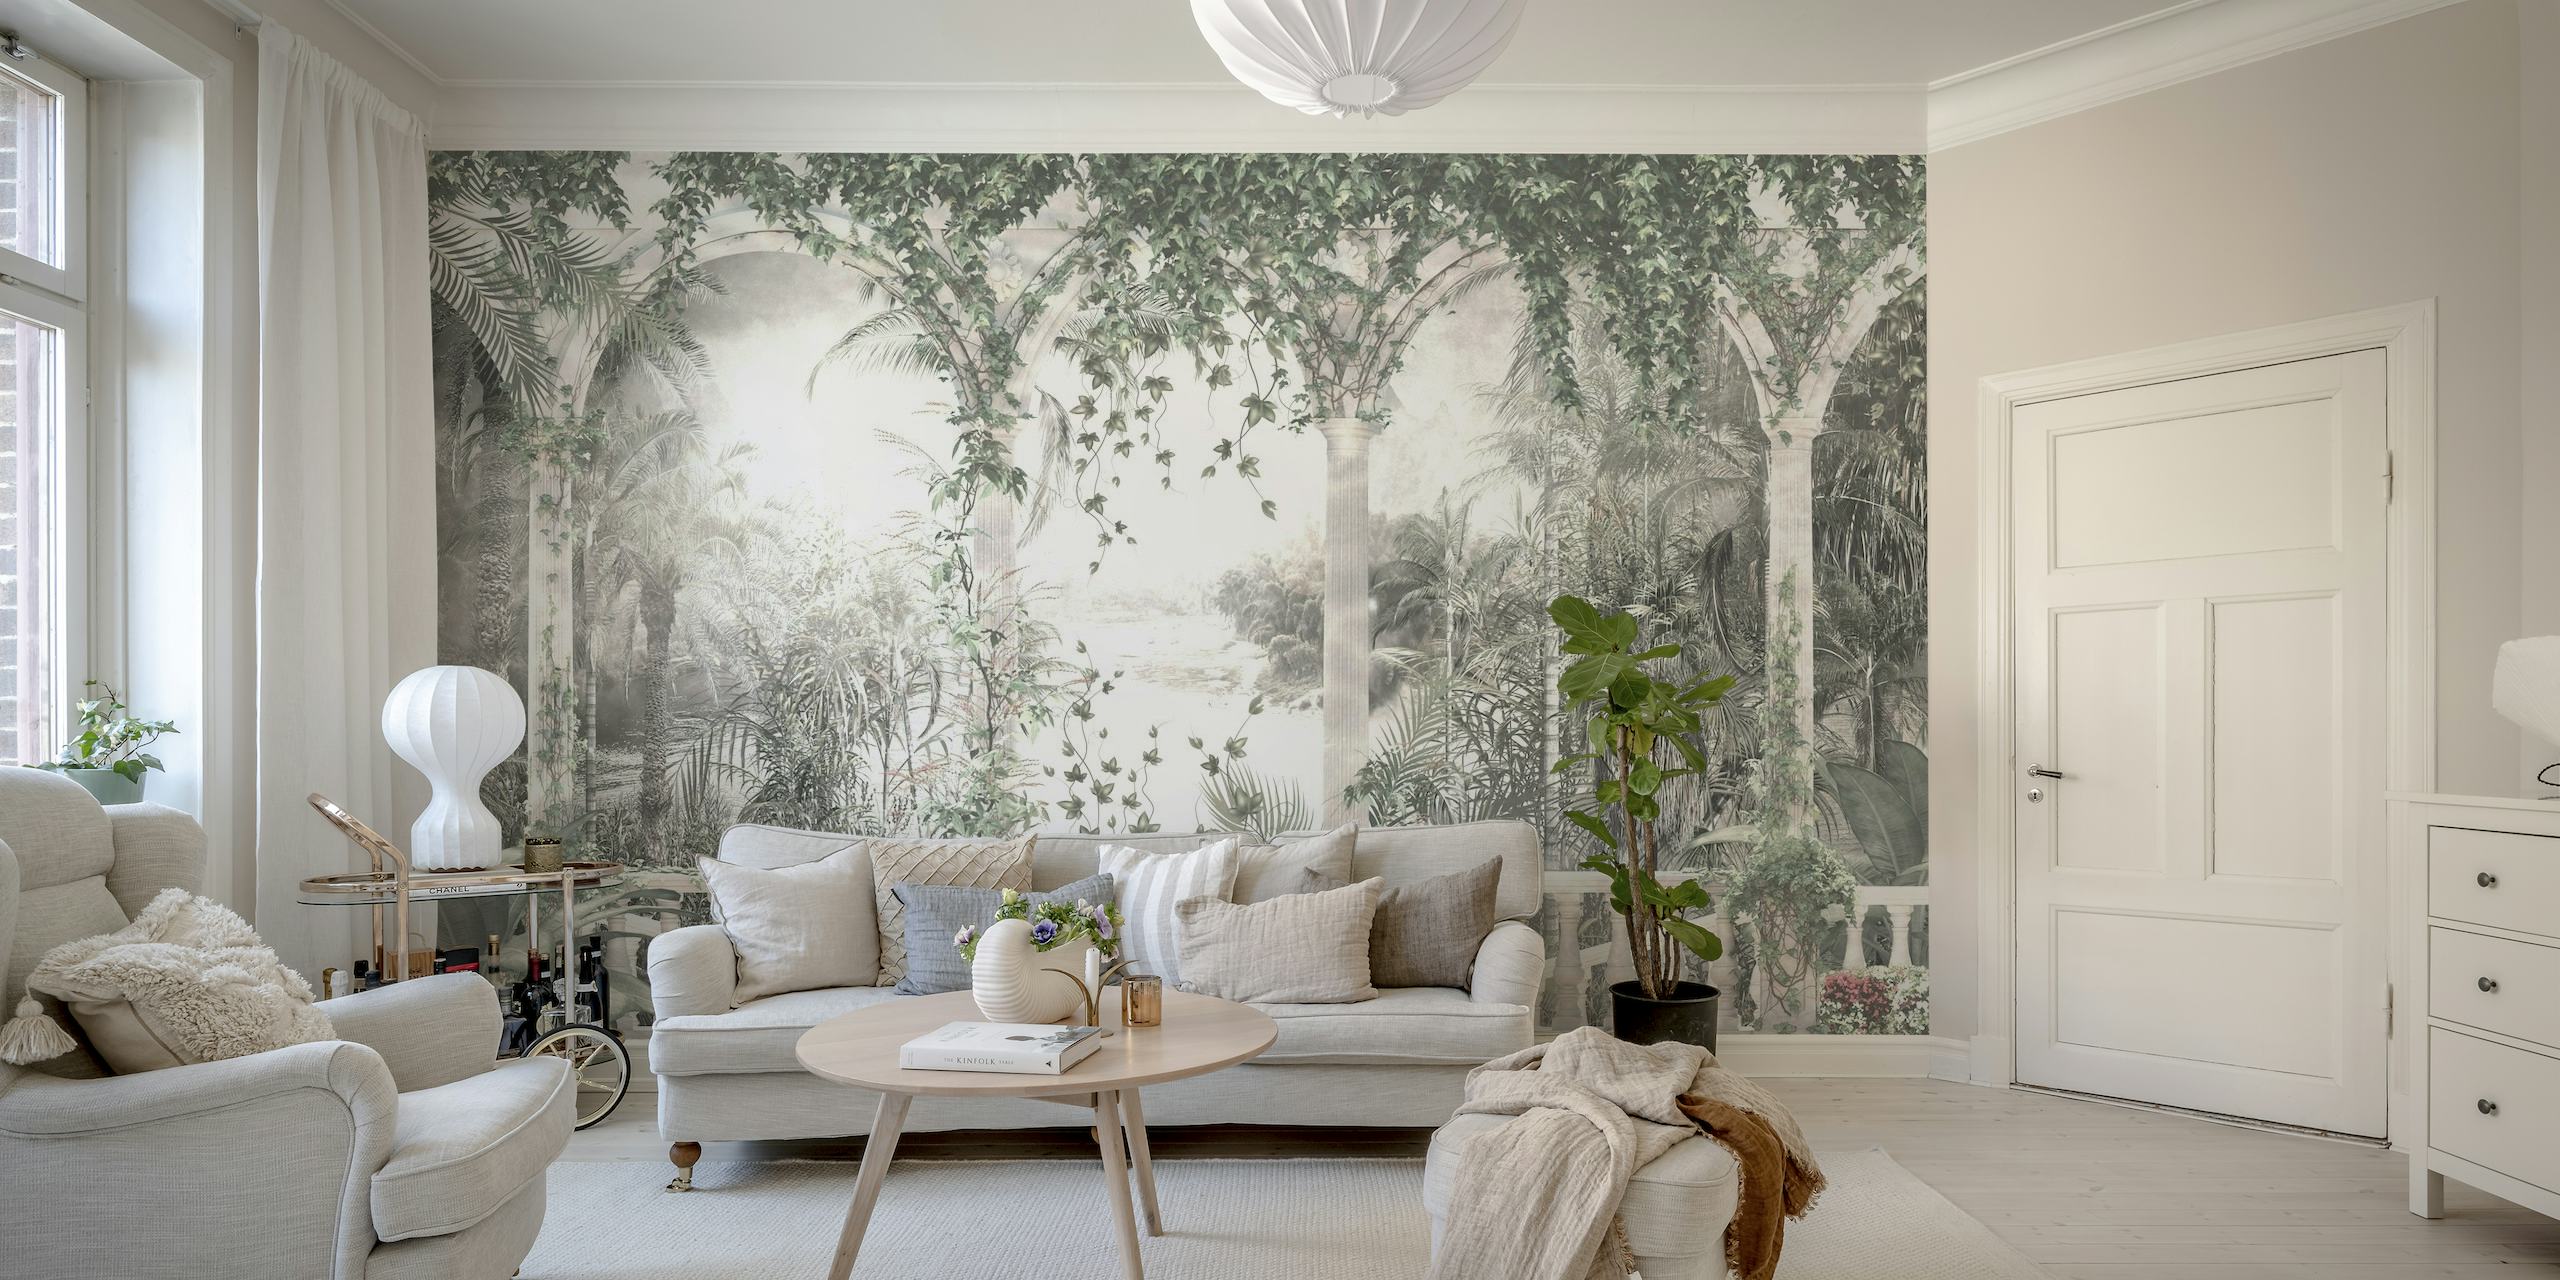 Muurschildering met tropisch uitzicht met gebogen bomen en een sereen landschap